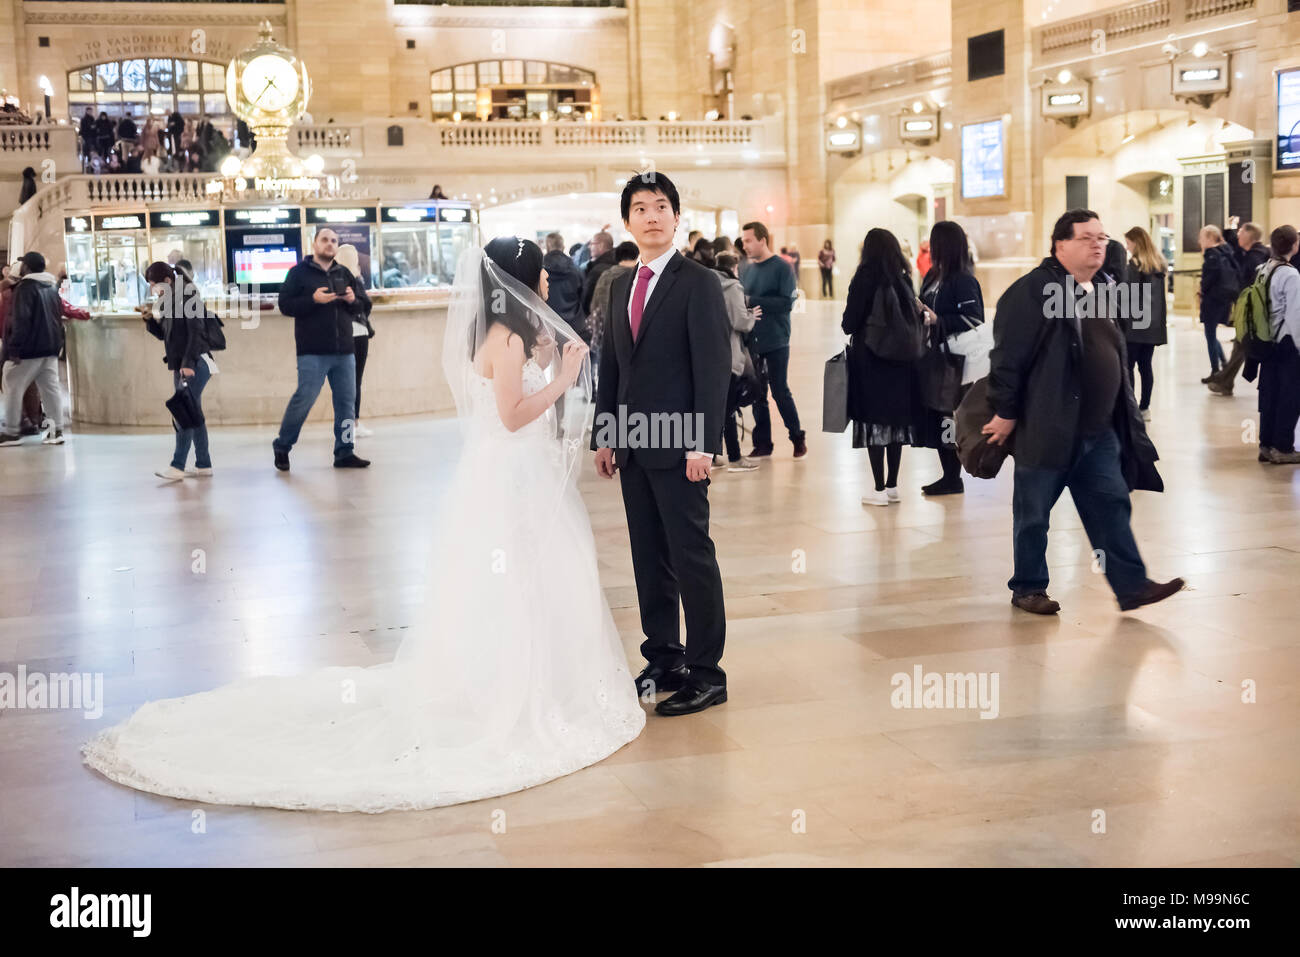 New York City, USA - 29. Oktober 2017: Grand Central Station NEW YORK CITY Halle, Transport Concourse, Menschen Hochzeit der Braut im weißen Kleid, glücklich sm Stockfoto